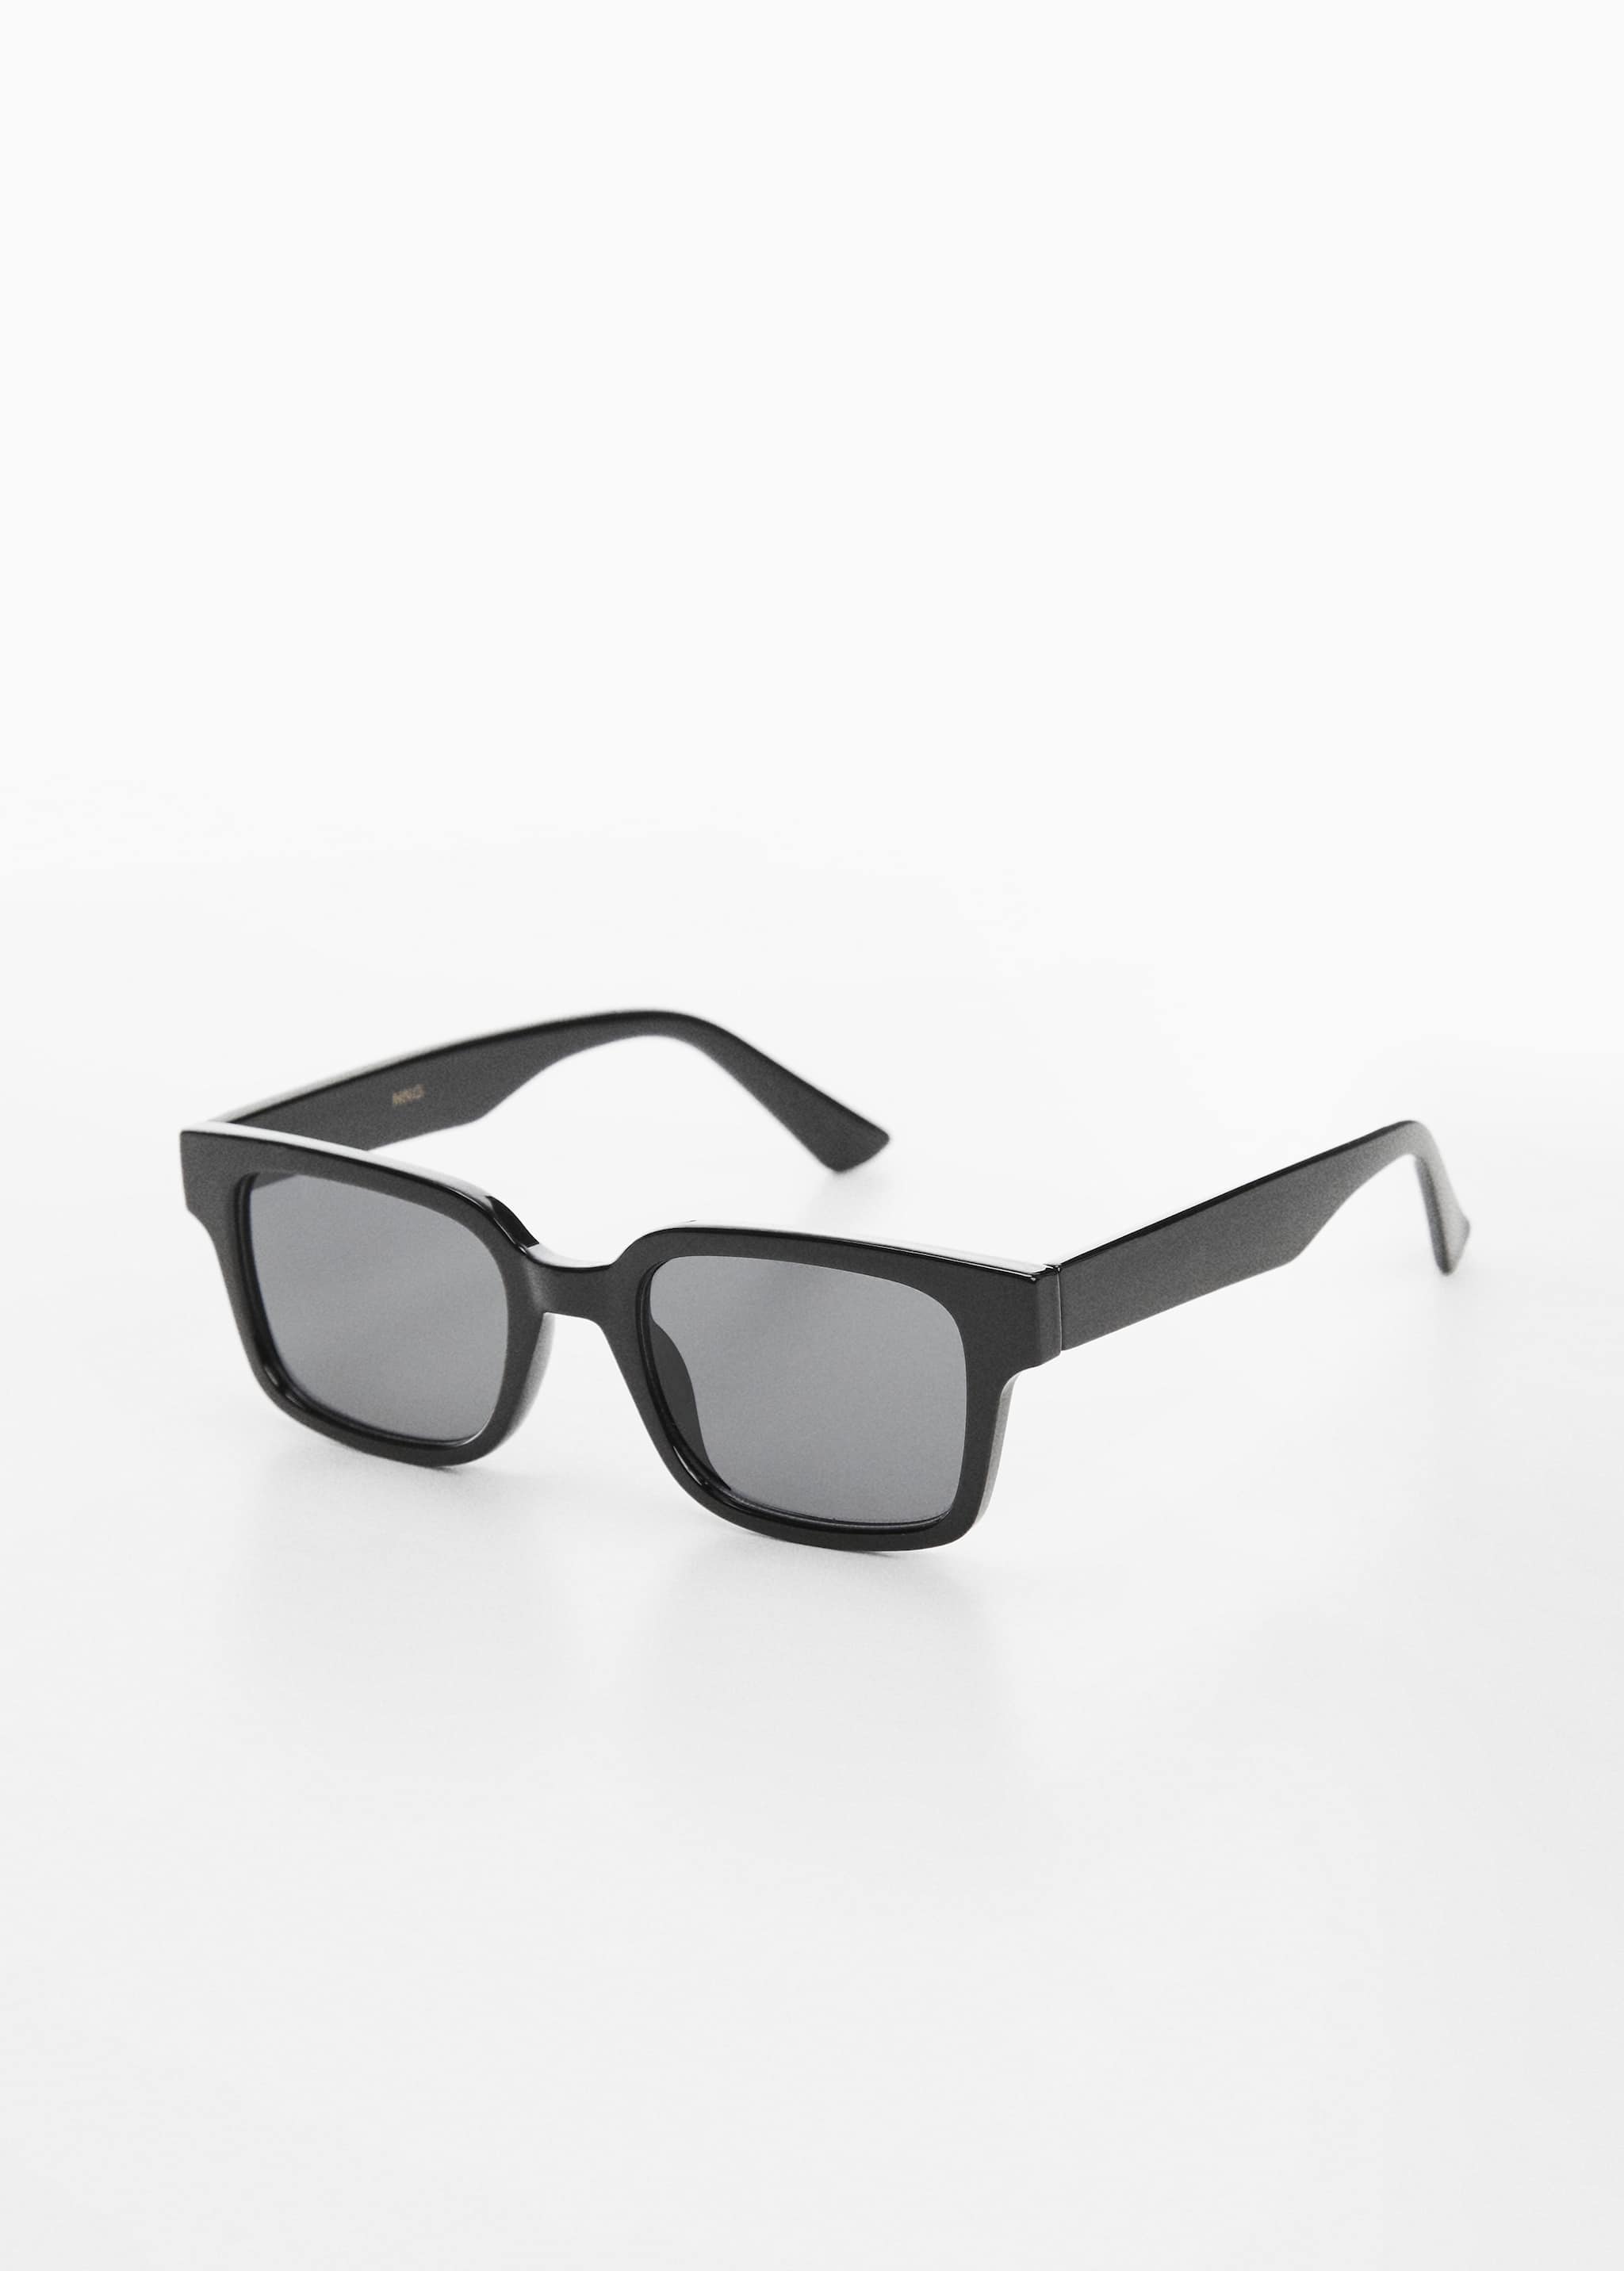 Square sunglasses - Medium plane